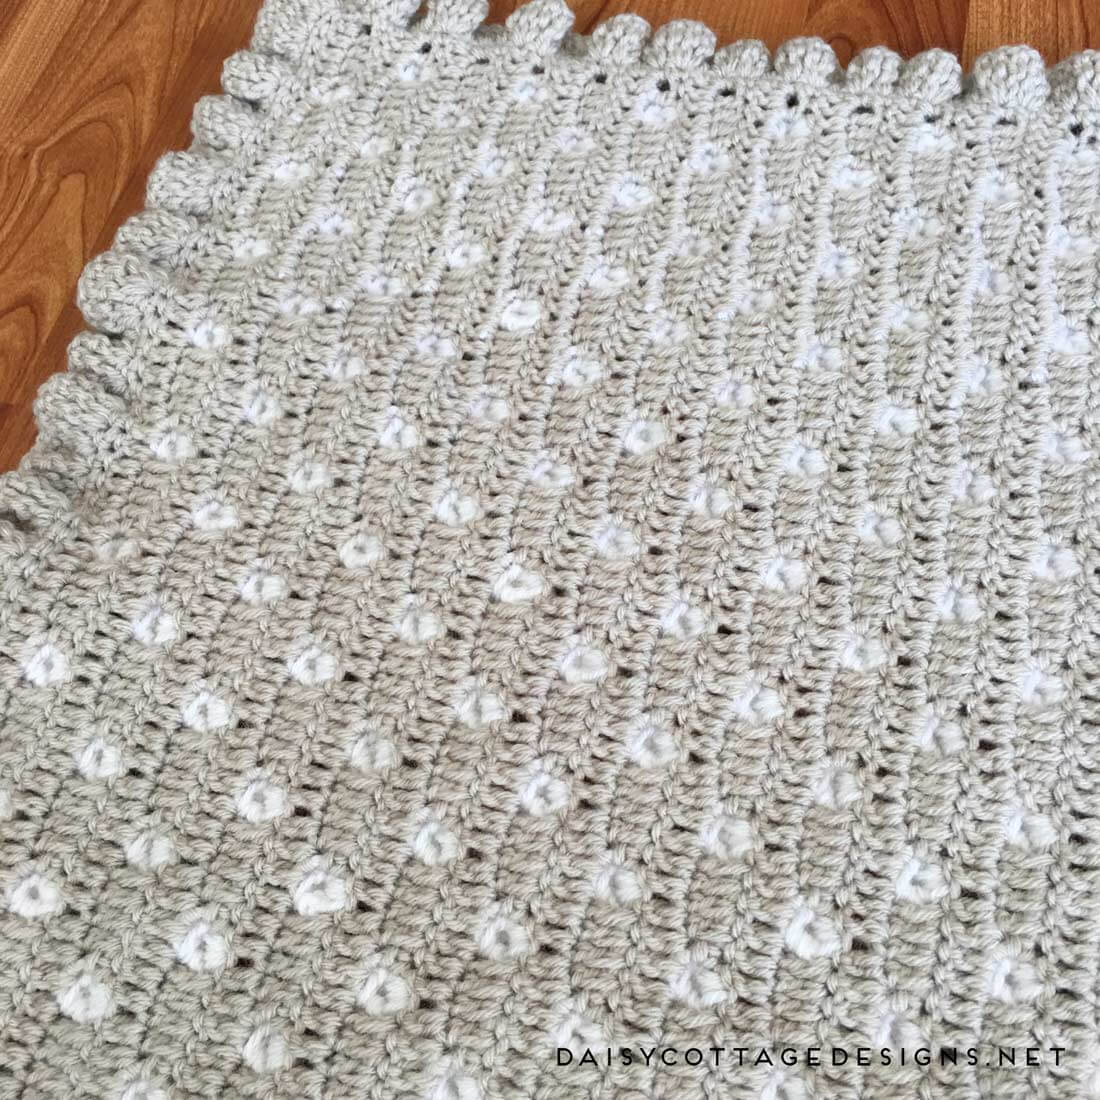 Free Crochet Patterns Baby Blankets Appealing Crochet Ba Blankets Crochet And Knitting Patterns 2019